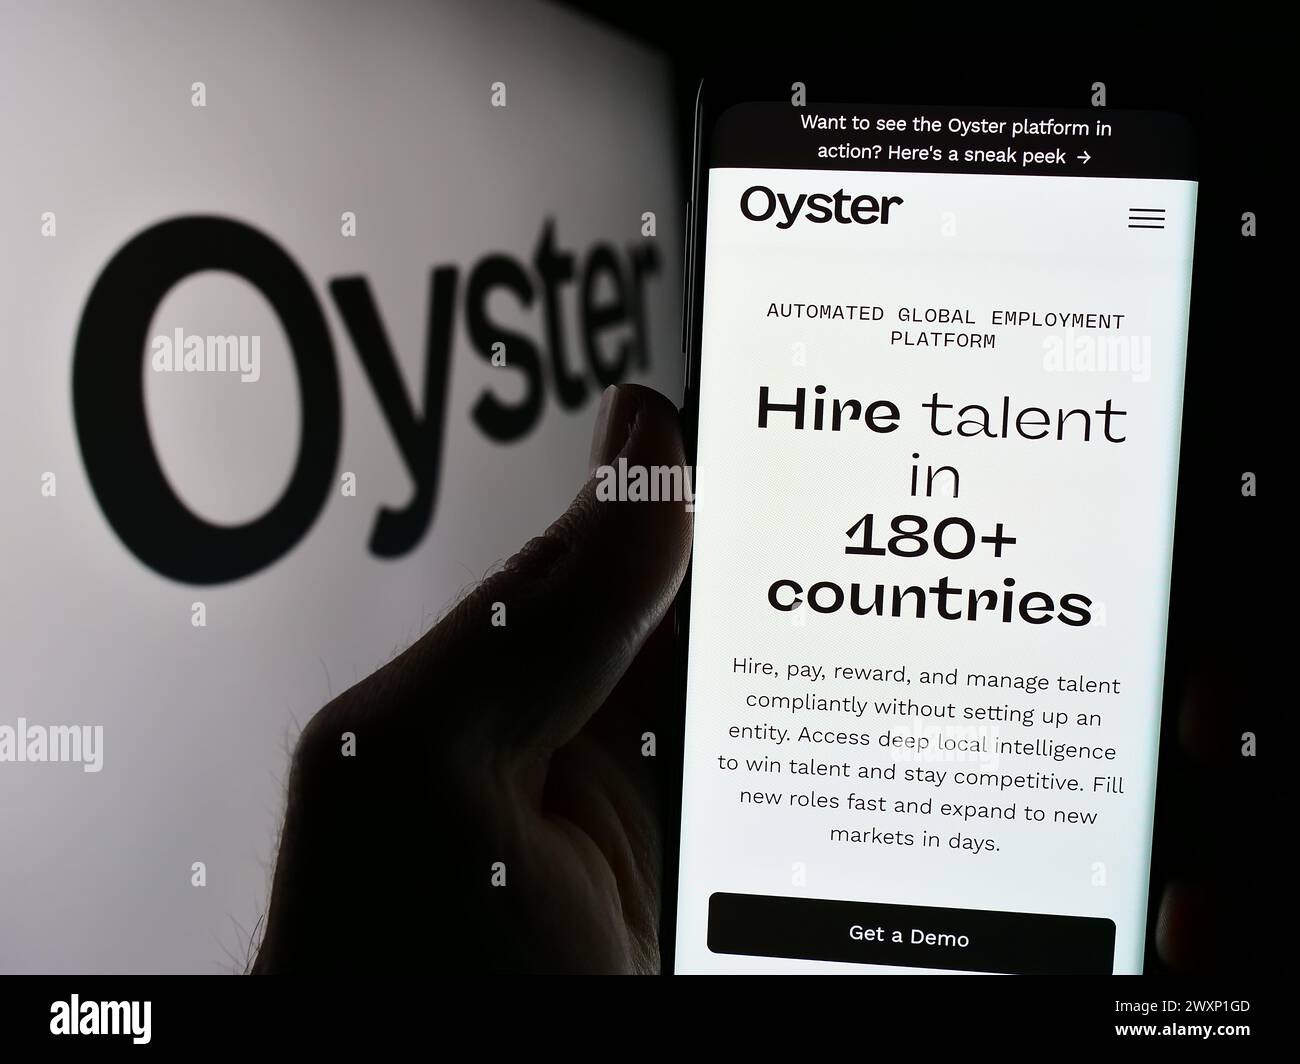 Persona che detiene un cellulare con la pagina Web della società statunitense Oyster HR Inc. Di fronte al logo. Messa a fuoco al centro del display del telefono. Foto Stock